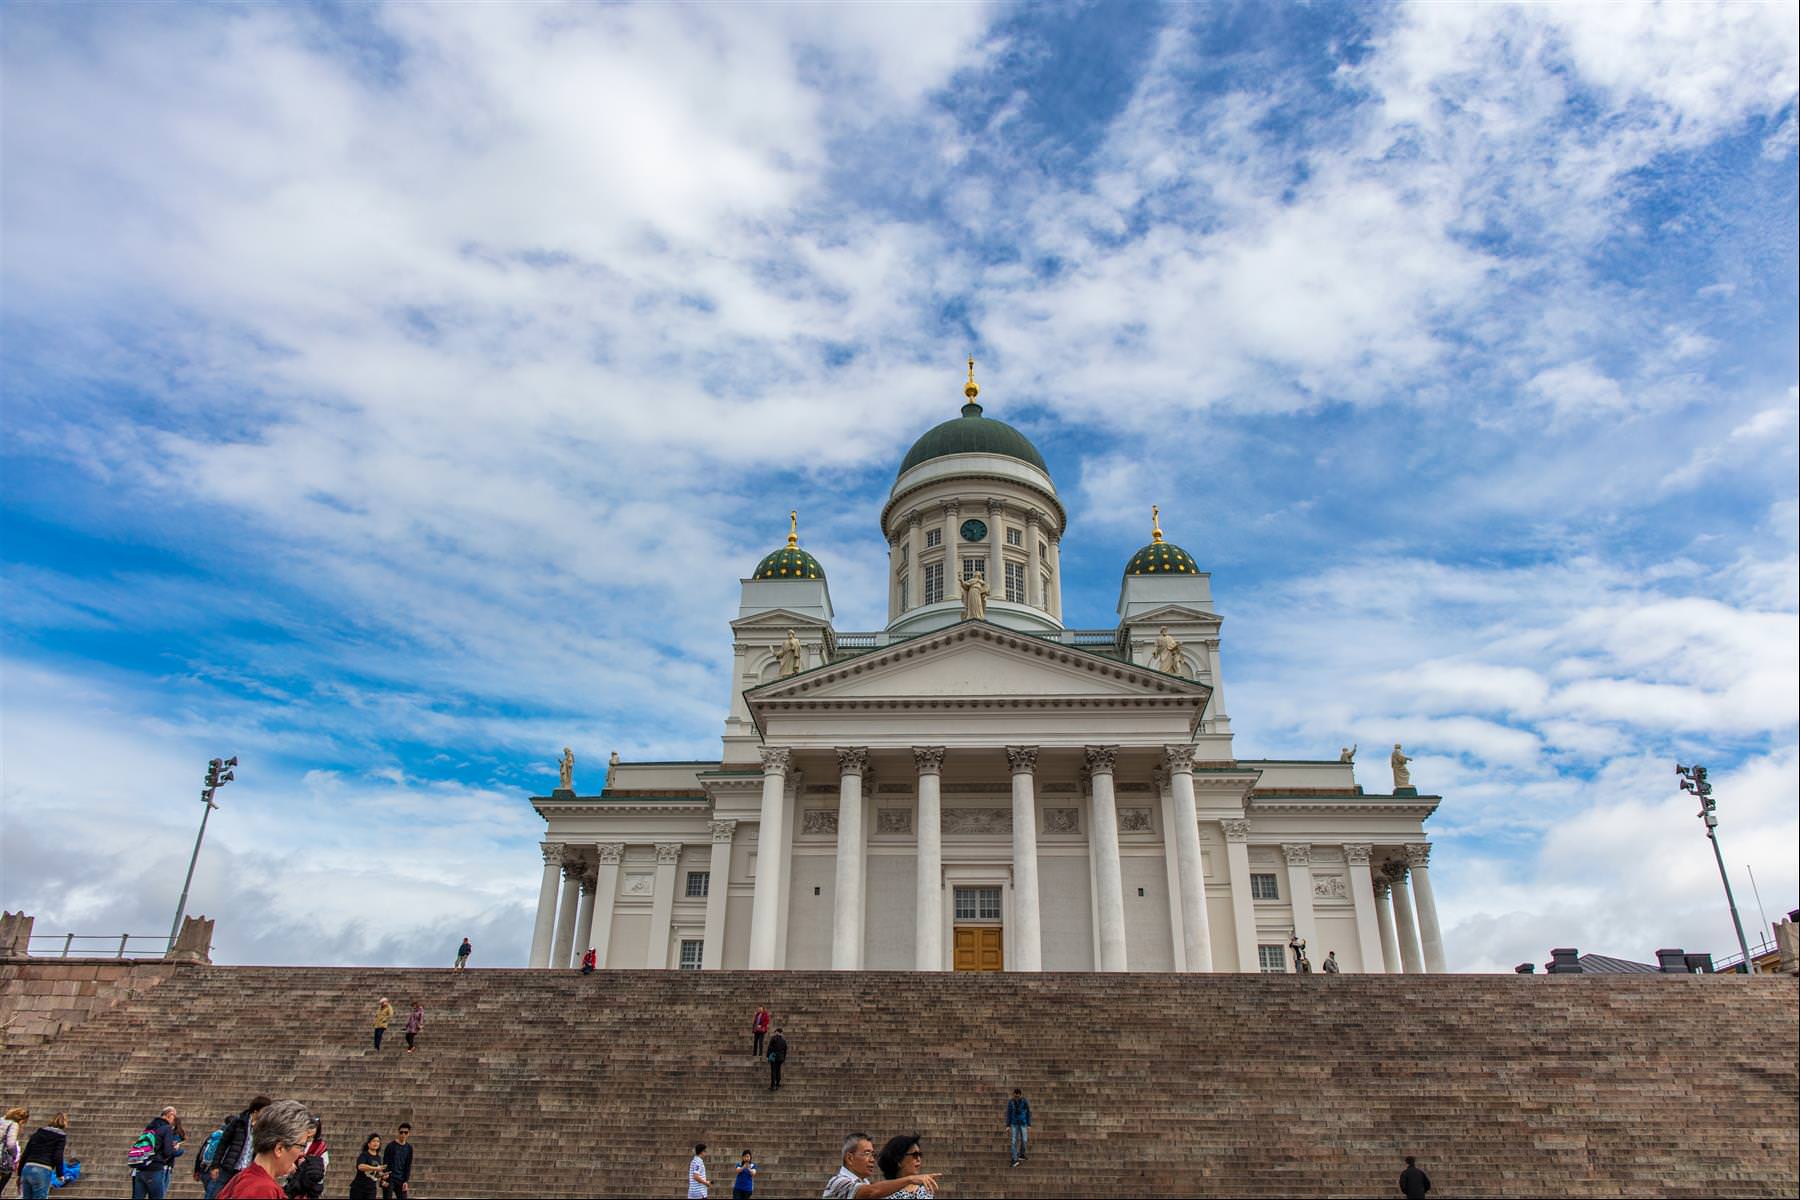 [巨大旅遊] 北歐五國 17 日旅程第 06 日 – 赫爾辛基議會廣場、西貝流斯公園、岩石教堂